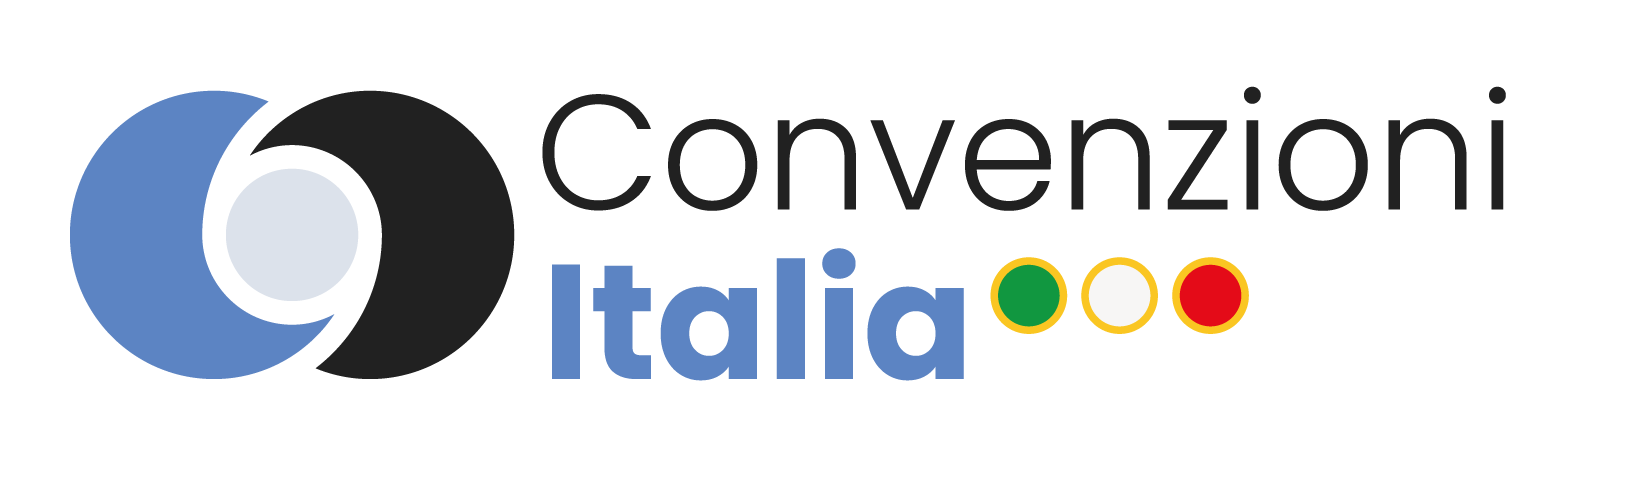 COnvenzioni italia